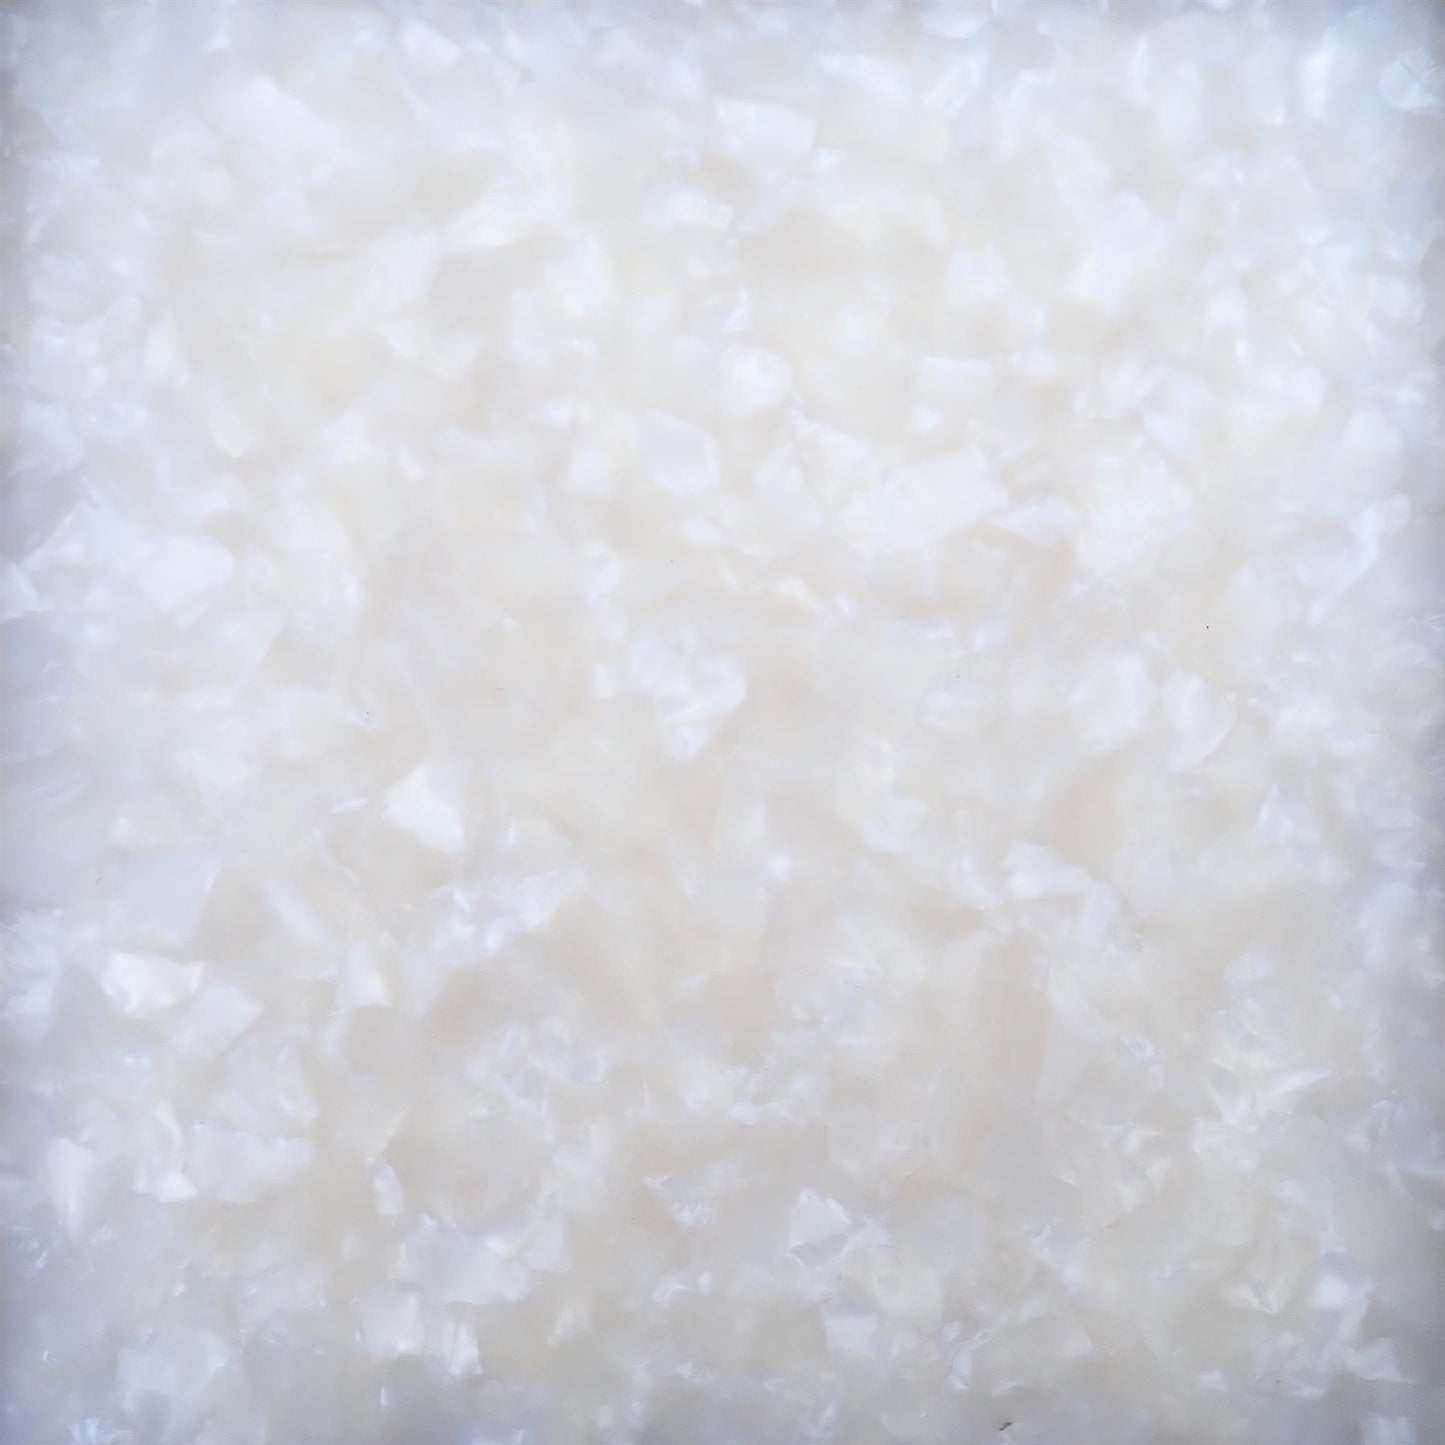 Incudo White Pearloid Cellulose Acetate Block - 165x100x10mm (6.5x3.94x0.39")